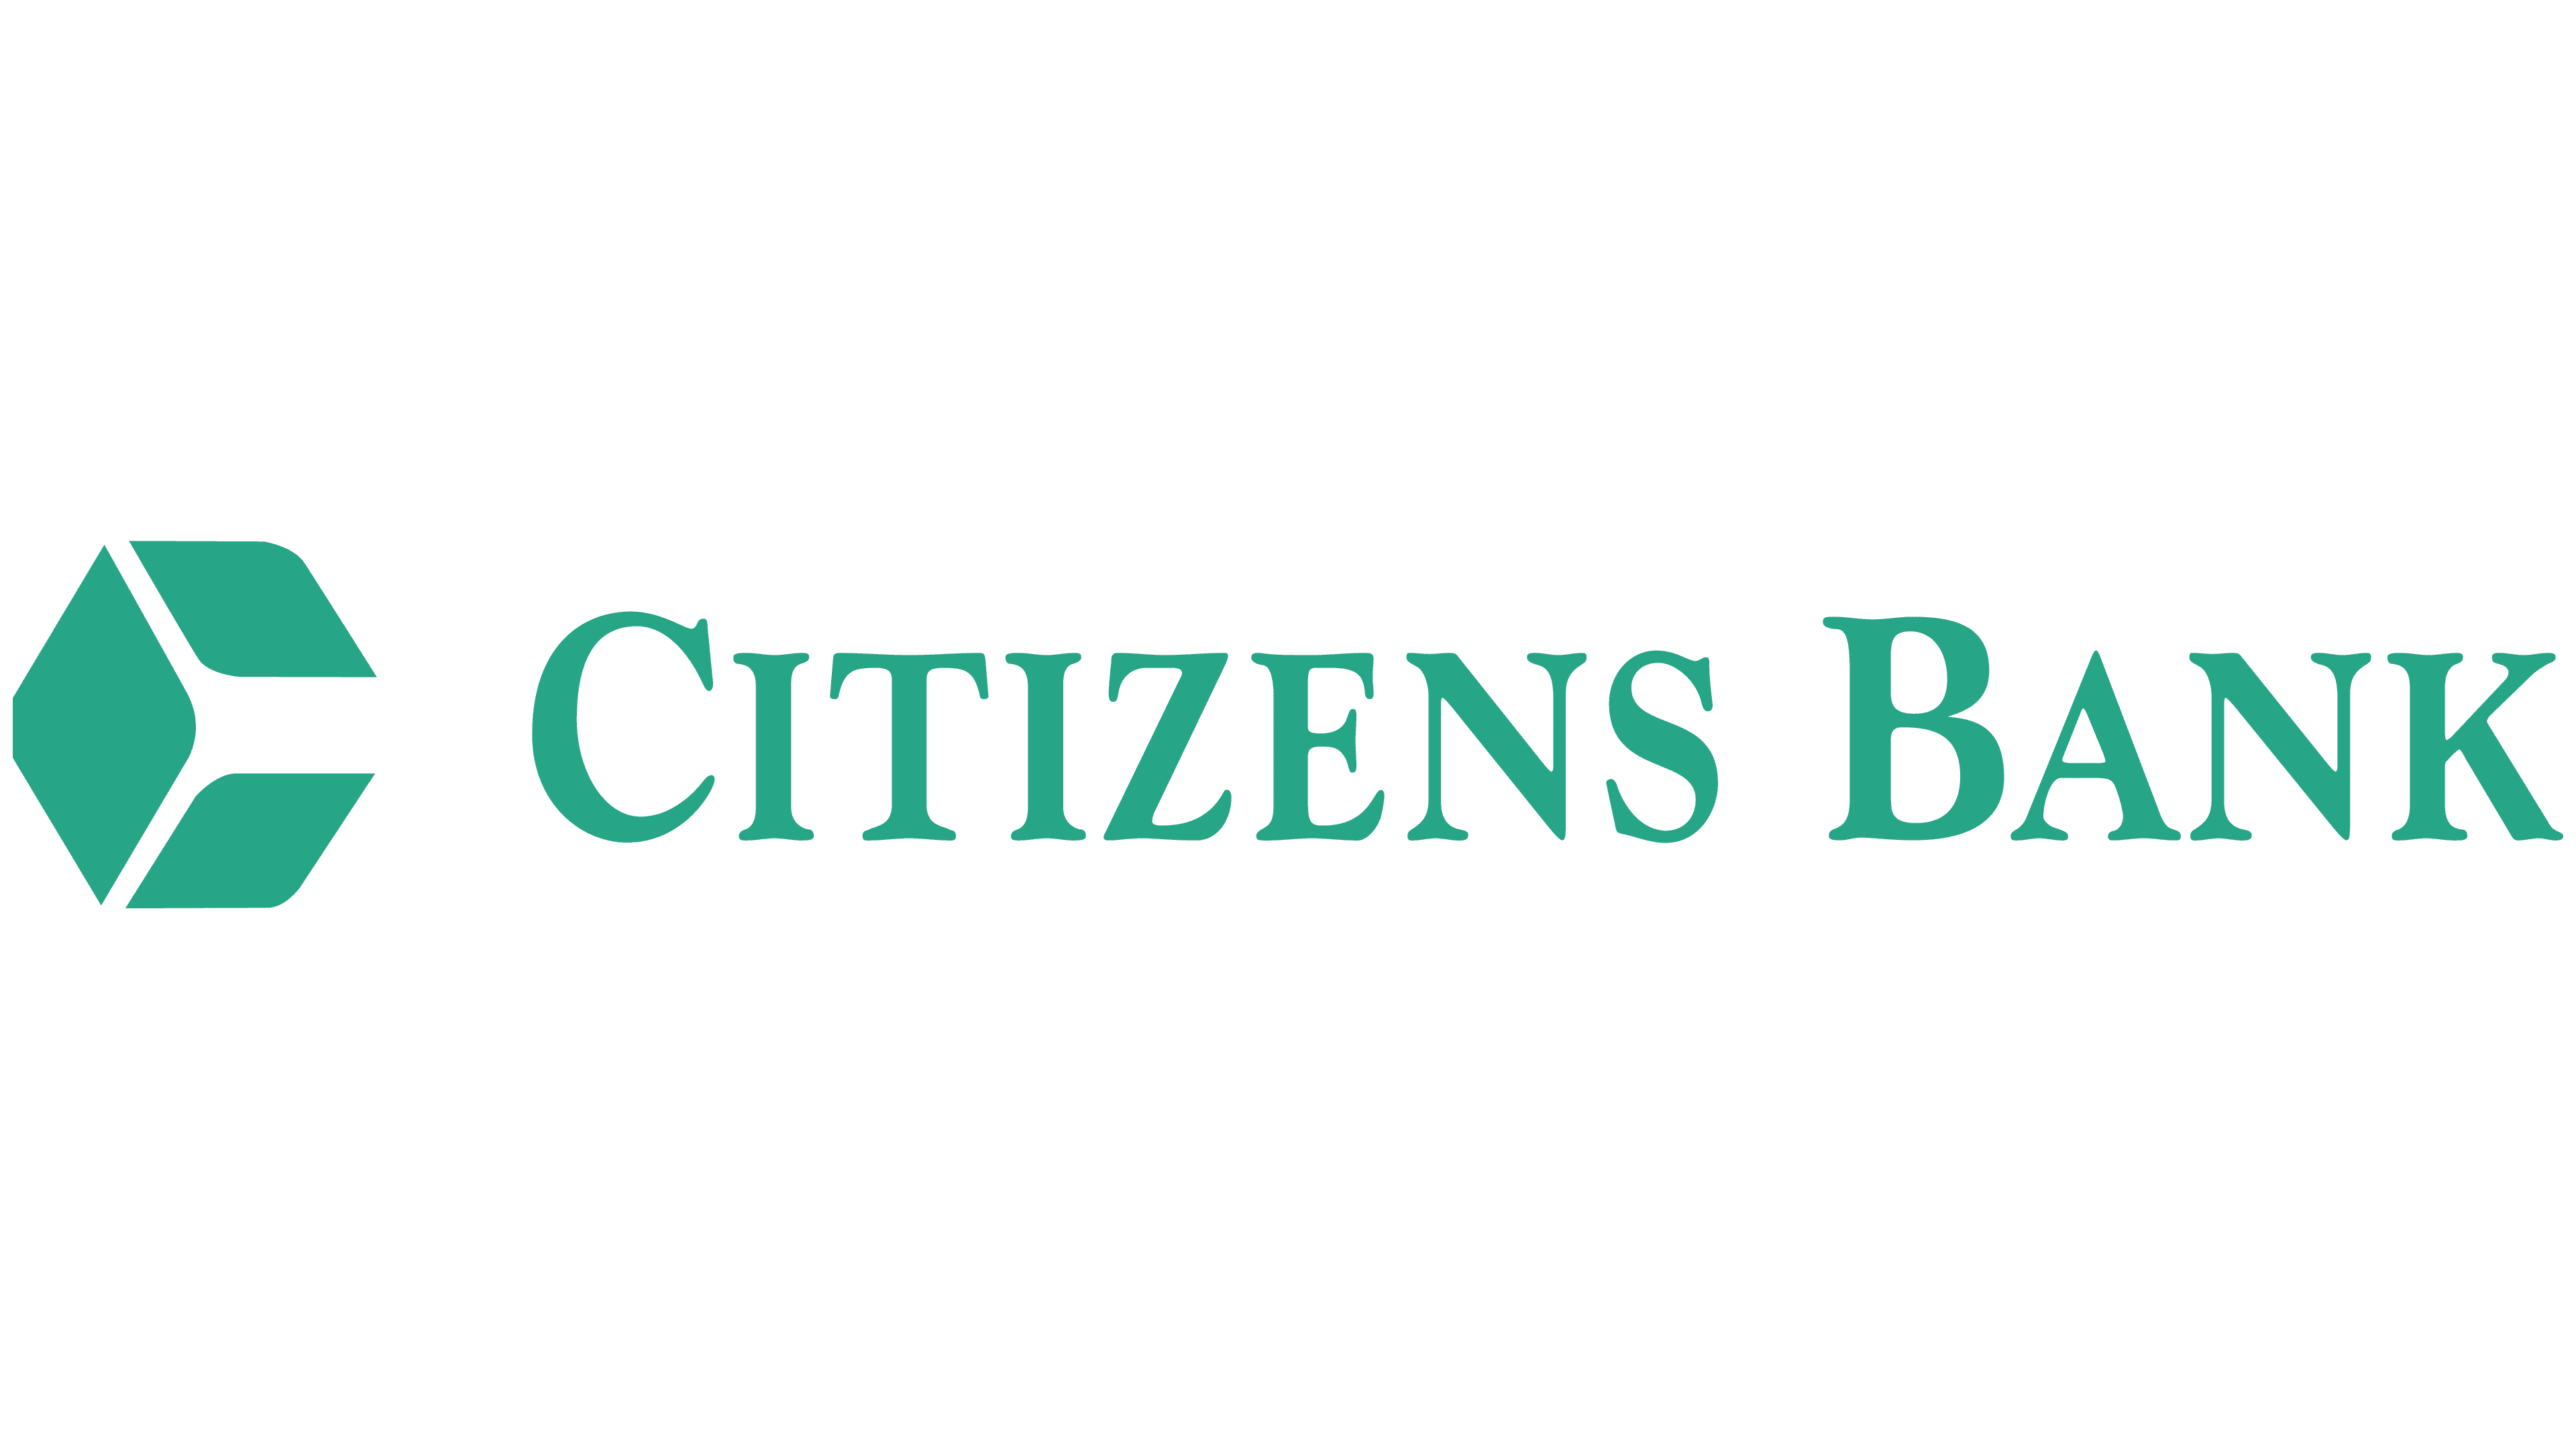 Arriba 65+ imagen citizen bank logo - Abzlocal.mx